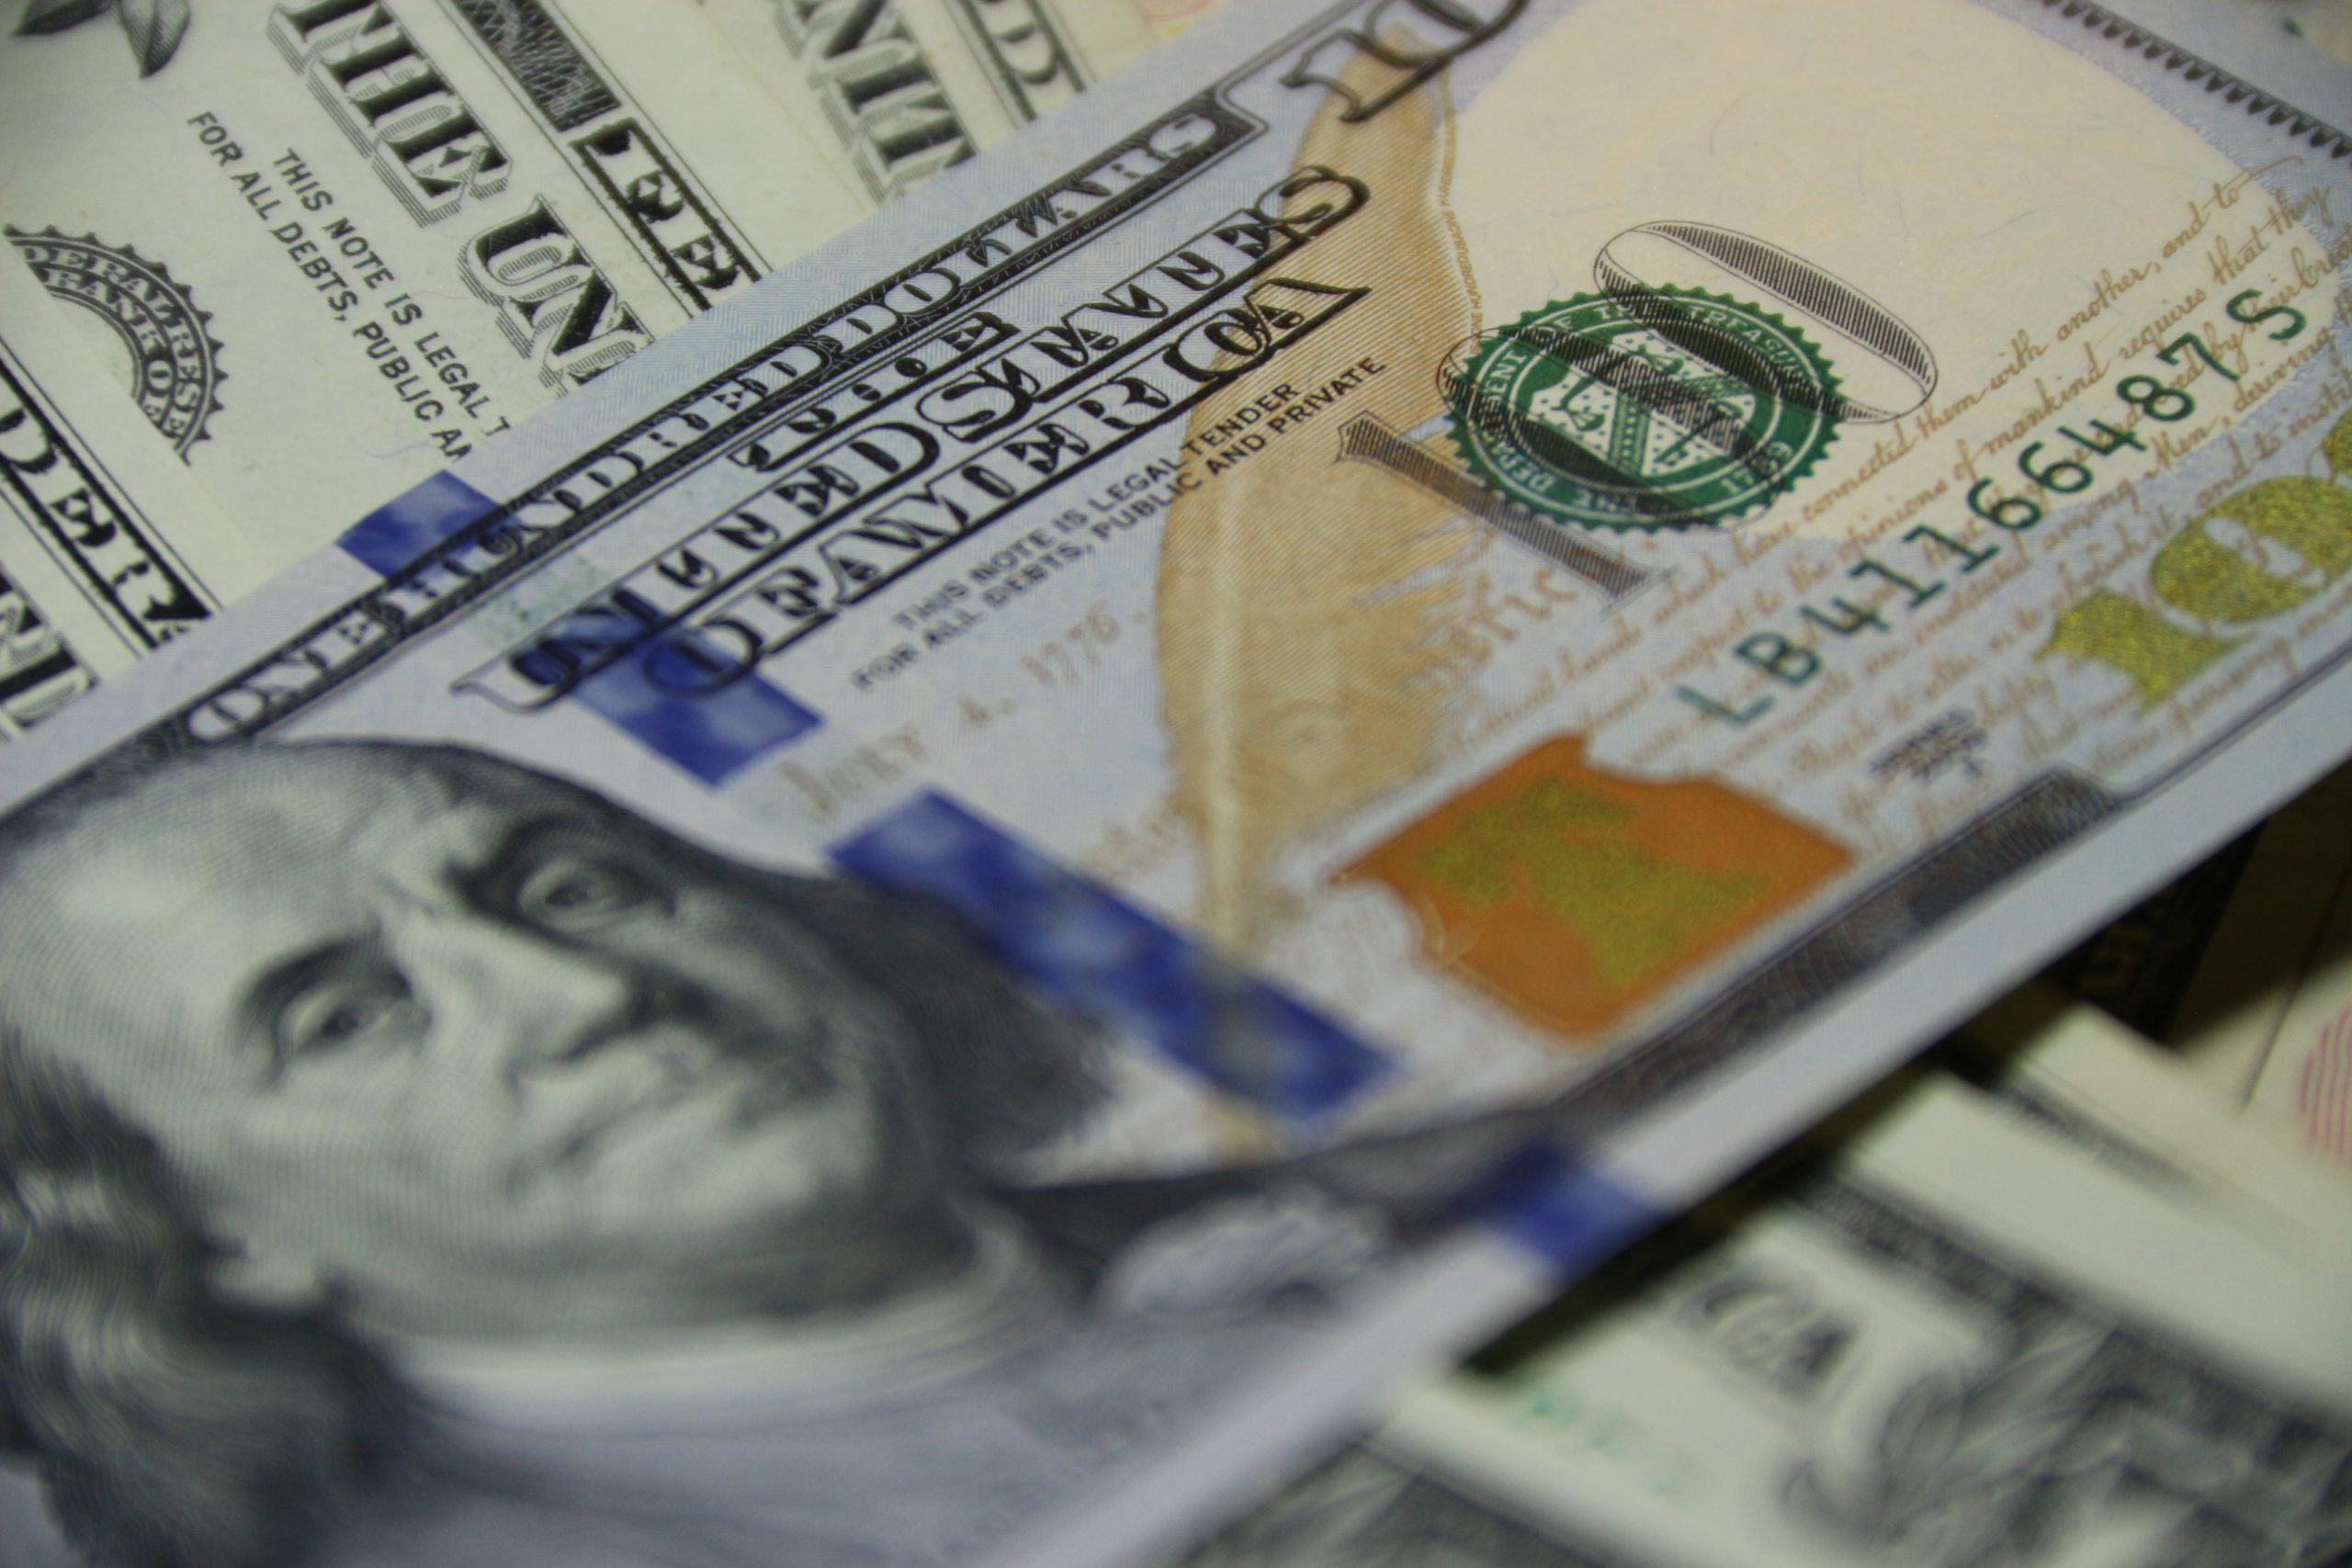 Utang luar negeri RI turun 5,9 miliar dolar AS per November